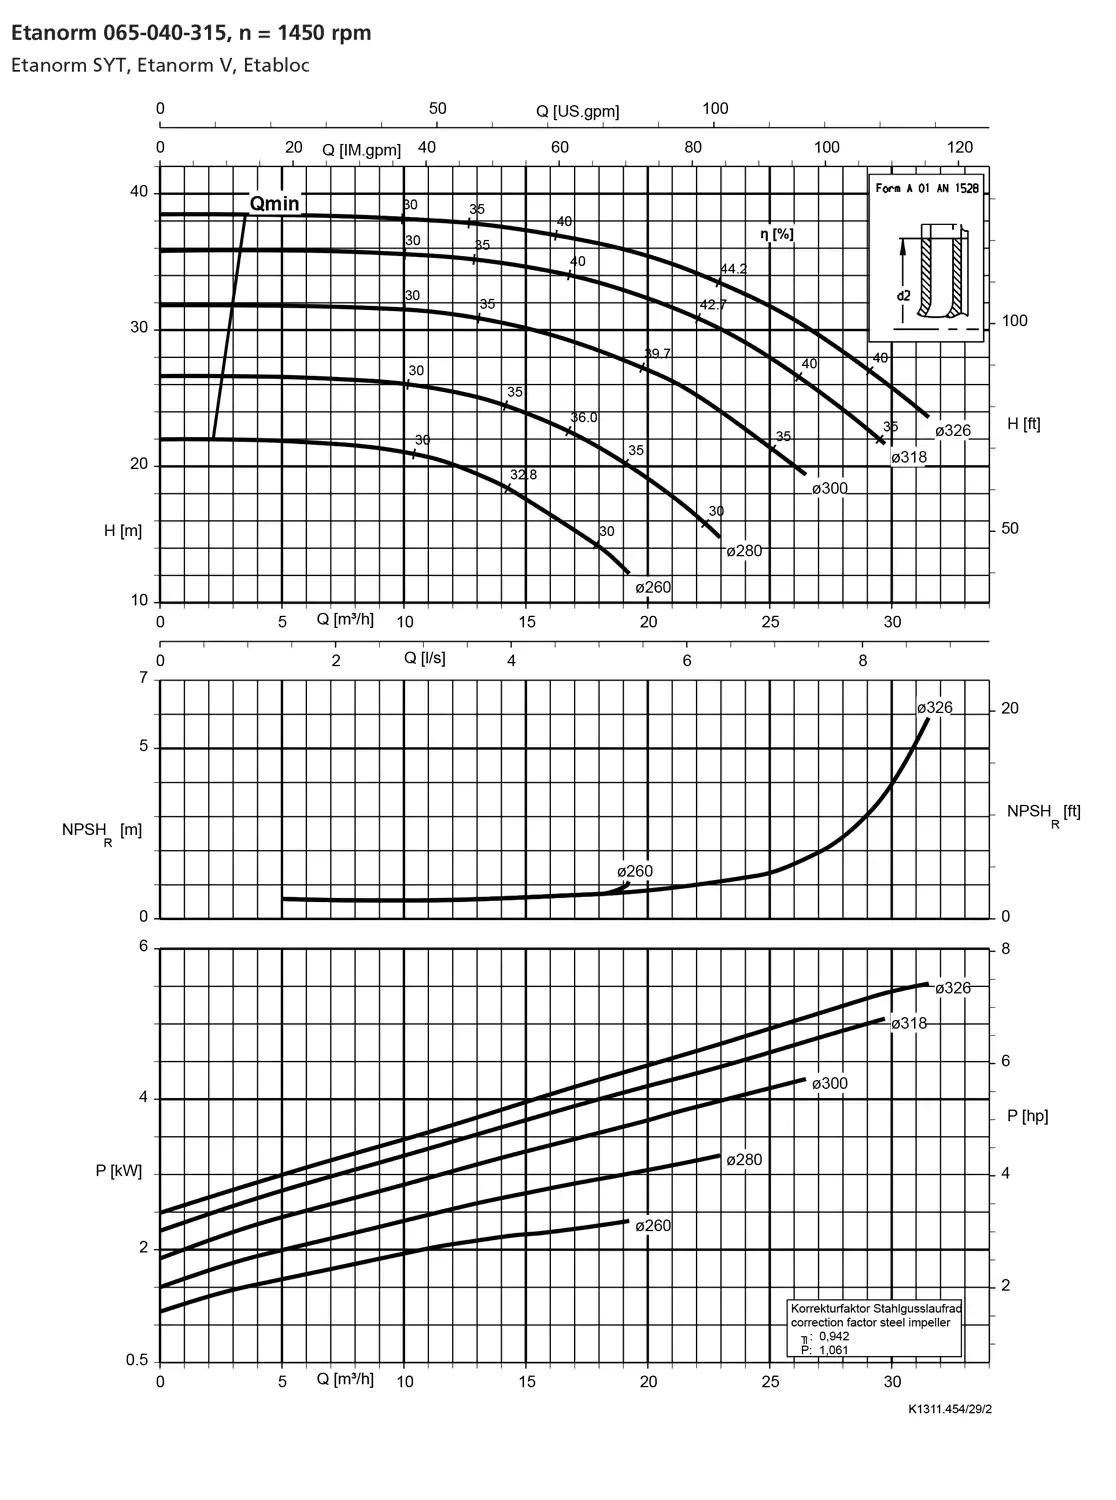 نمودار-کارکرد-پمپ-etanorm-65-040-315-1450